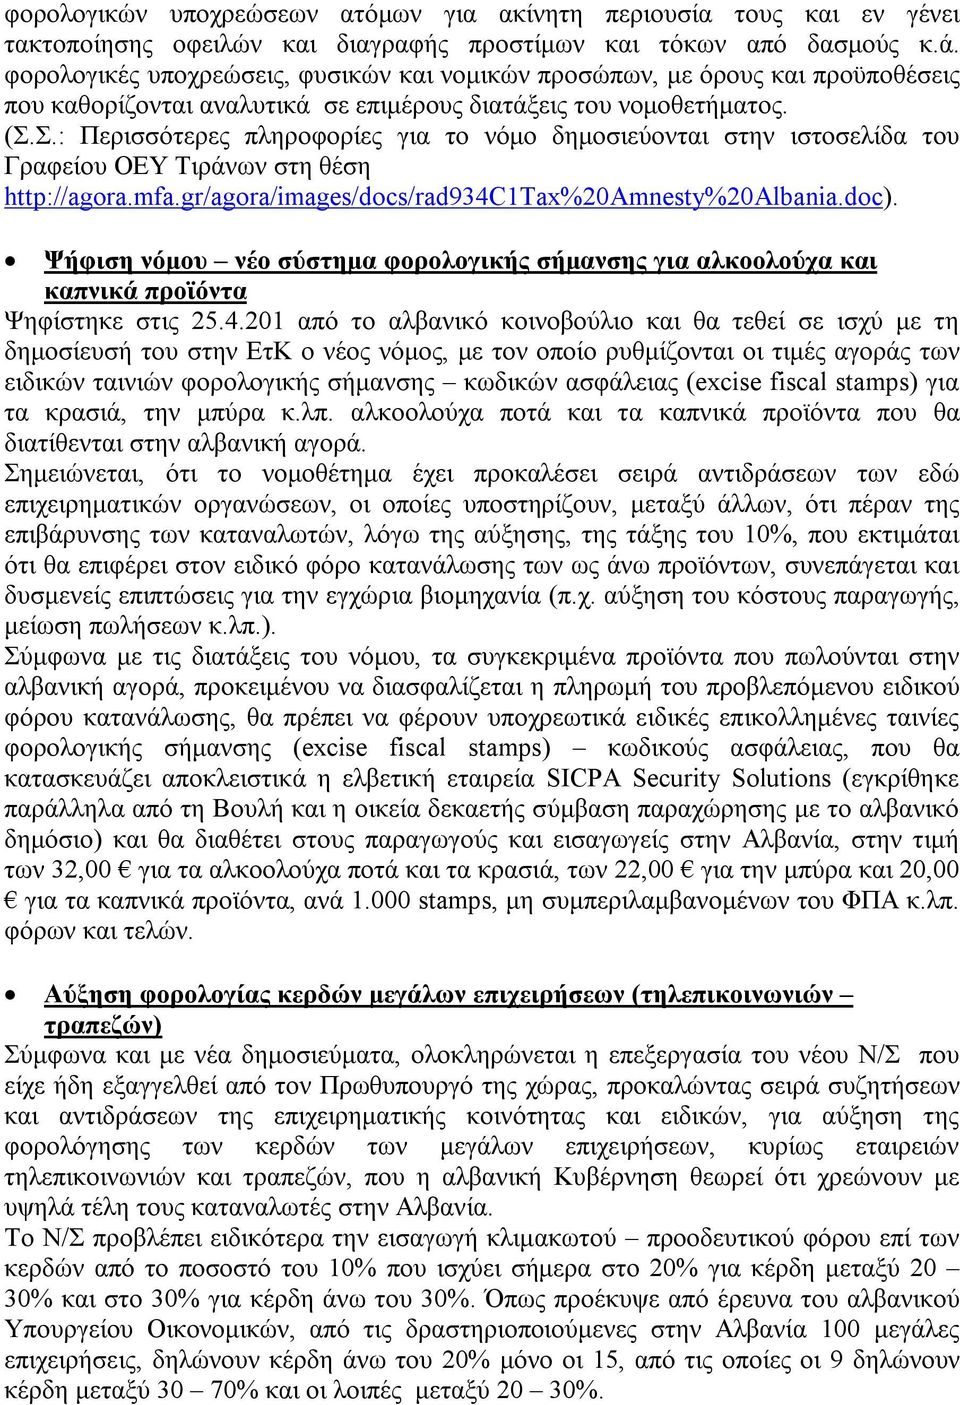 Σ.: Περισσότερες πληροφορίες για το νόμο δημοσιεύονται στην ιστοσελίδα του Γραφείου ΟΕΥ Τιράνων στη θέση http://agora.mfa.gr/agora/images/docs/rad934c1tax%20amnesty%20albania.doc).